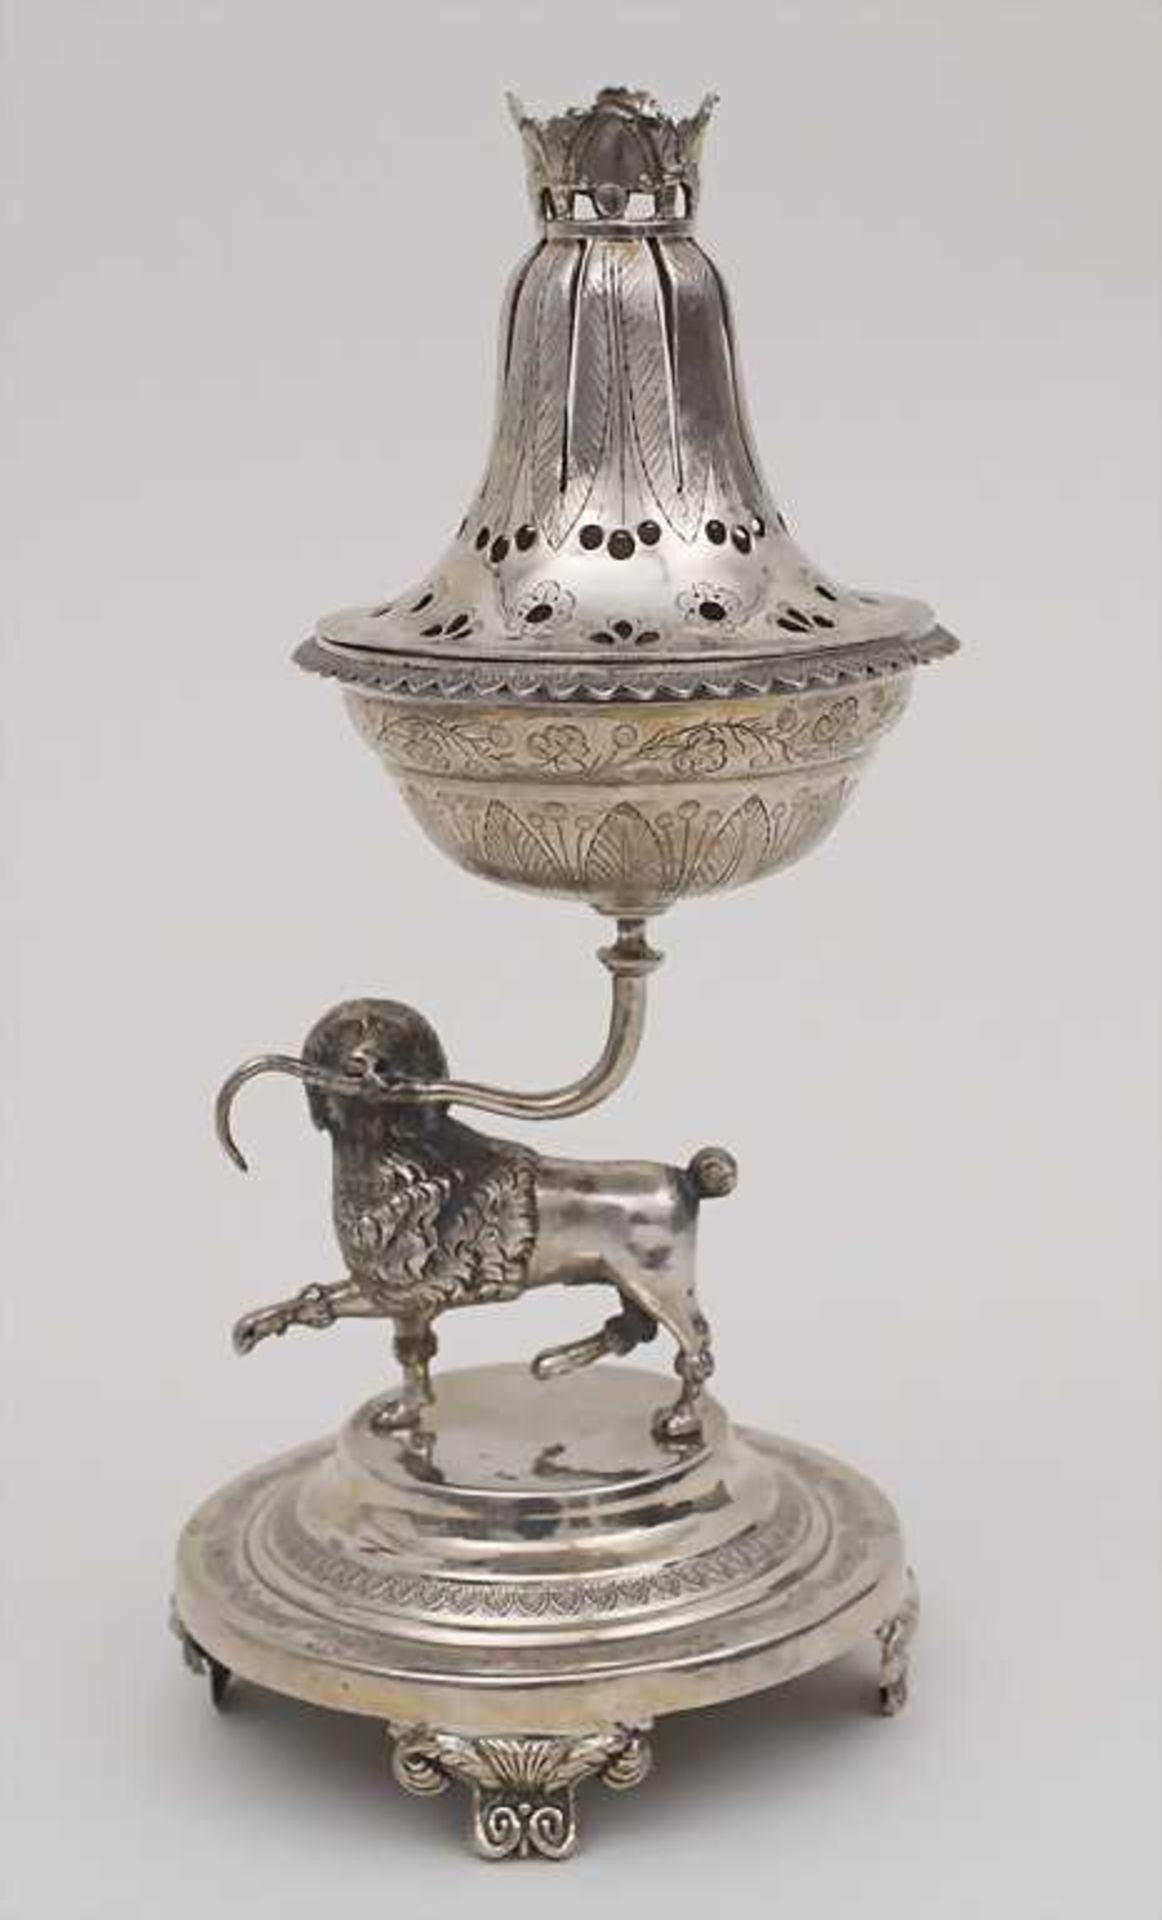 Brûle-Parfum mit Pudel / Poodle, Carreras, Barcelona, ca. 1830 Punzierung: Silber, Beschaumarke,